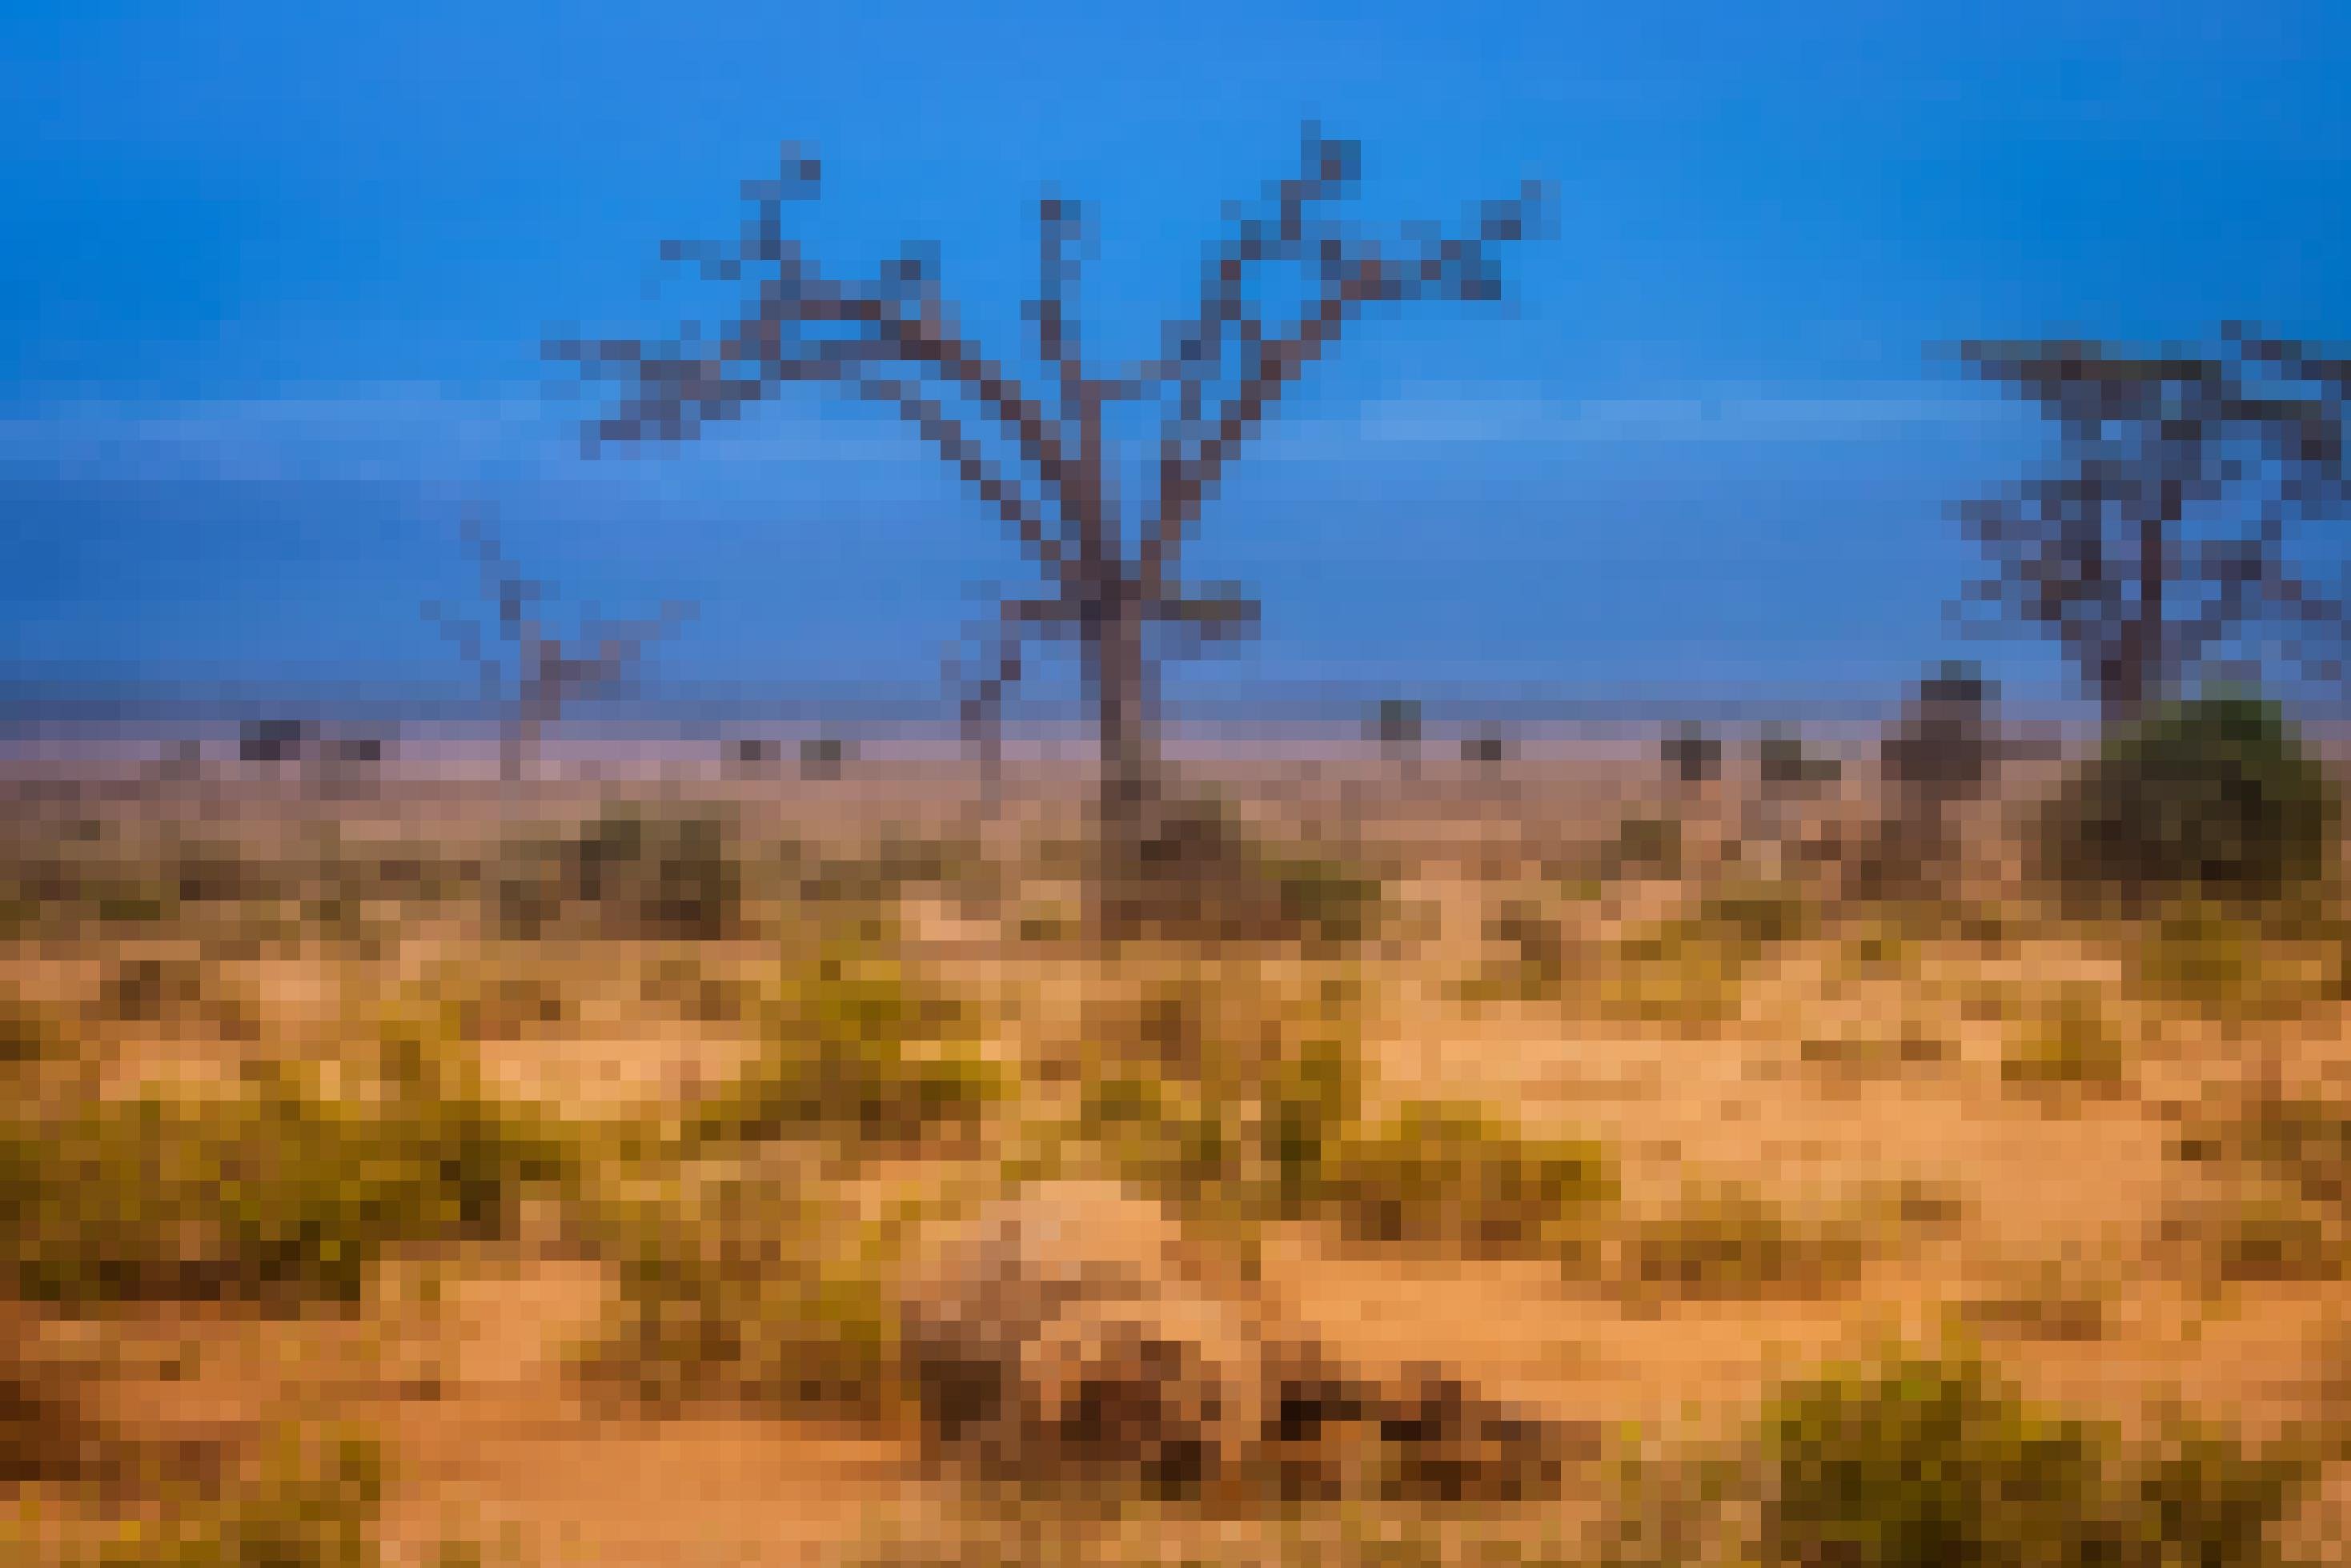 Vor tiefblauem Himmel zeigt sich eine verdorrte Savannenlandschaft aus hellbraunem Sandboden, bestanden mit zahleichen blassgrünen Büschen, im Hintergrund vereinzelte Bäume. Auf einem kahlen Baum hocken mehrere Geier, im Vordergrund liegen die Überreste einen Elefantenkadavers.